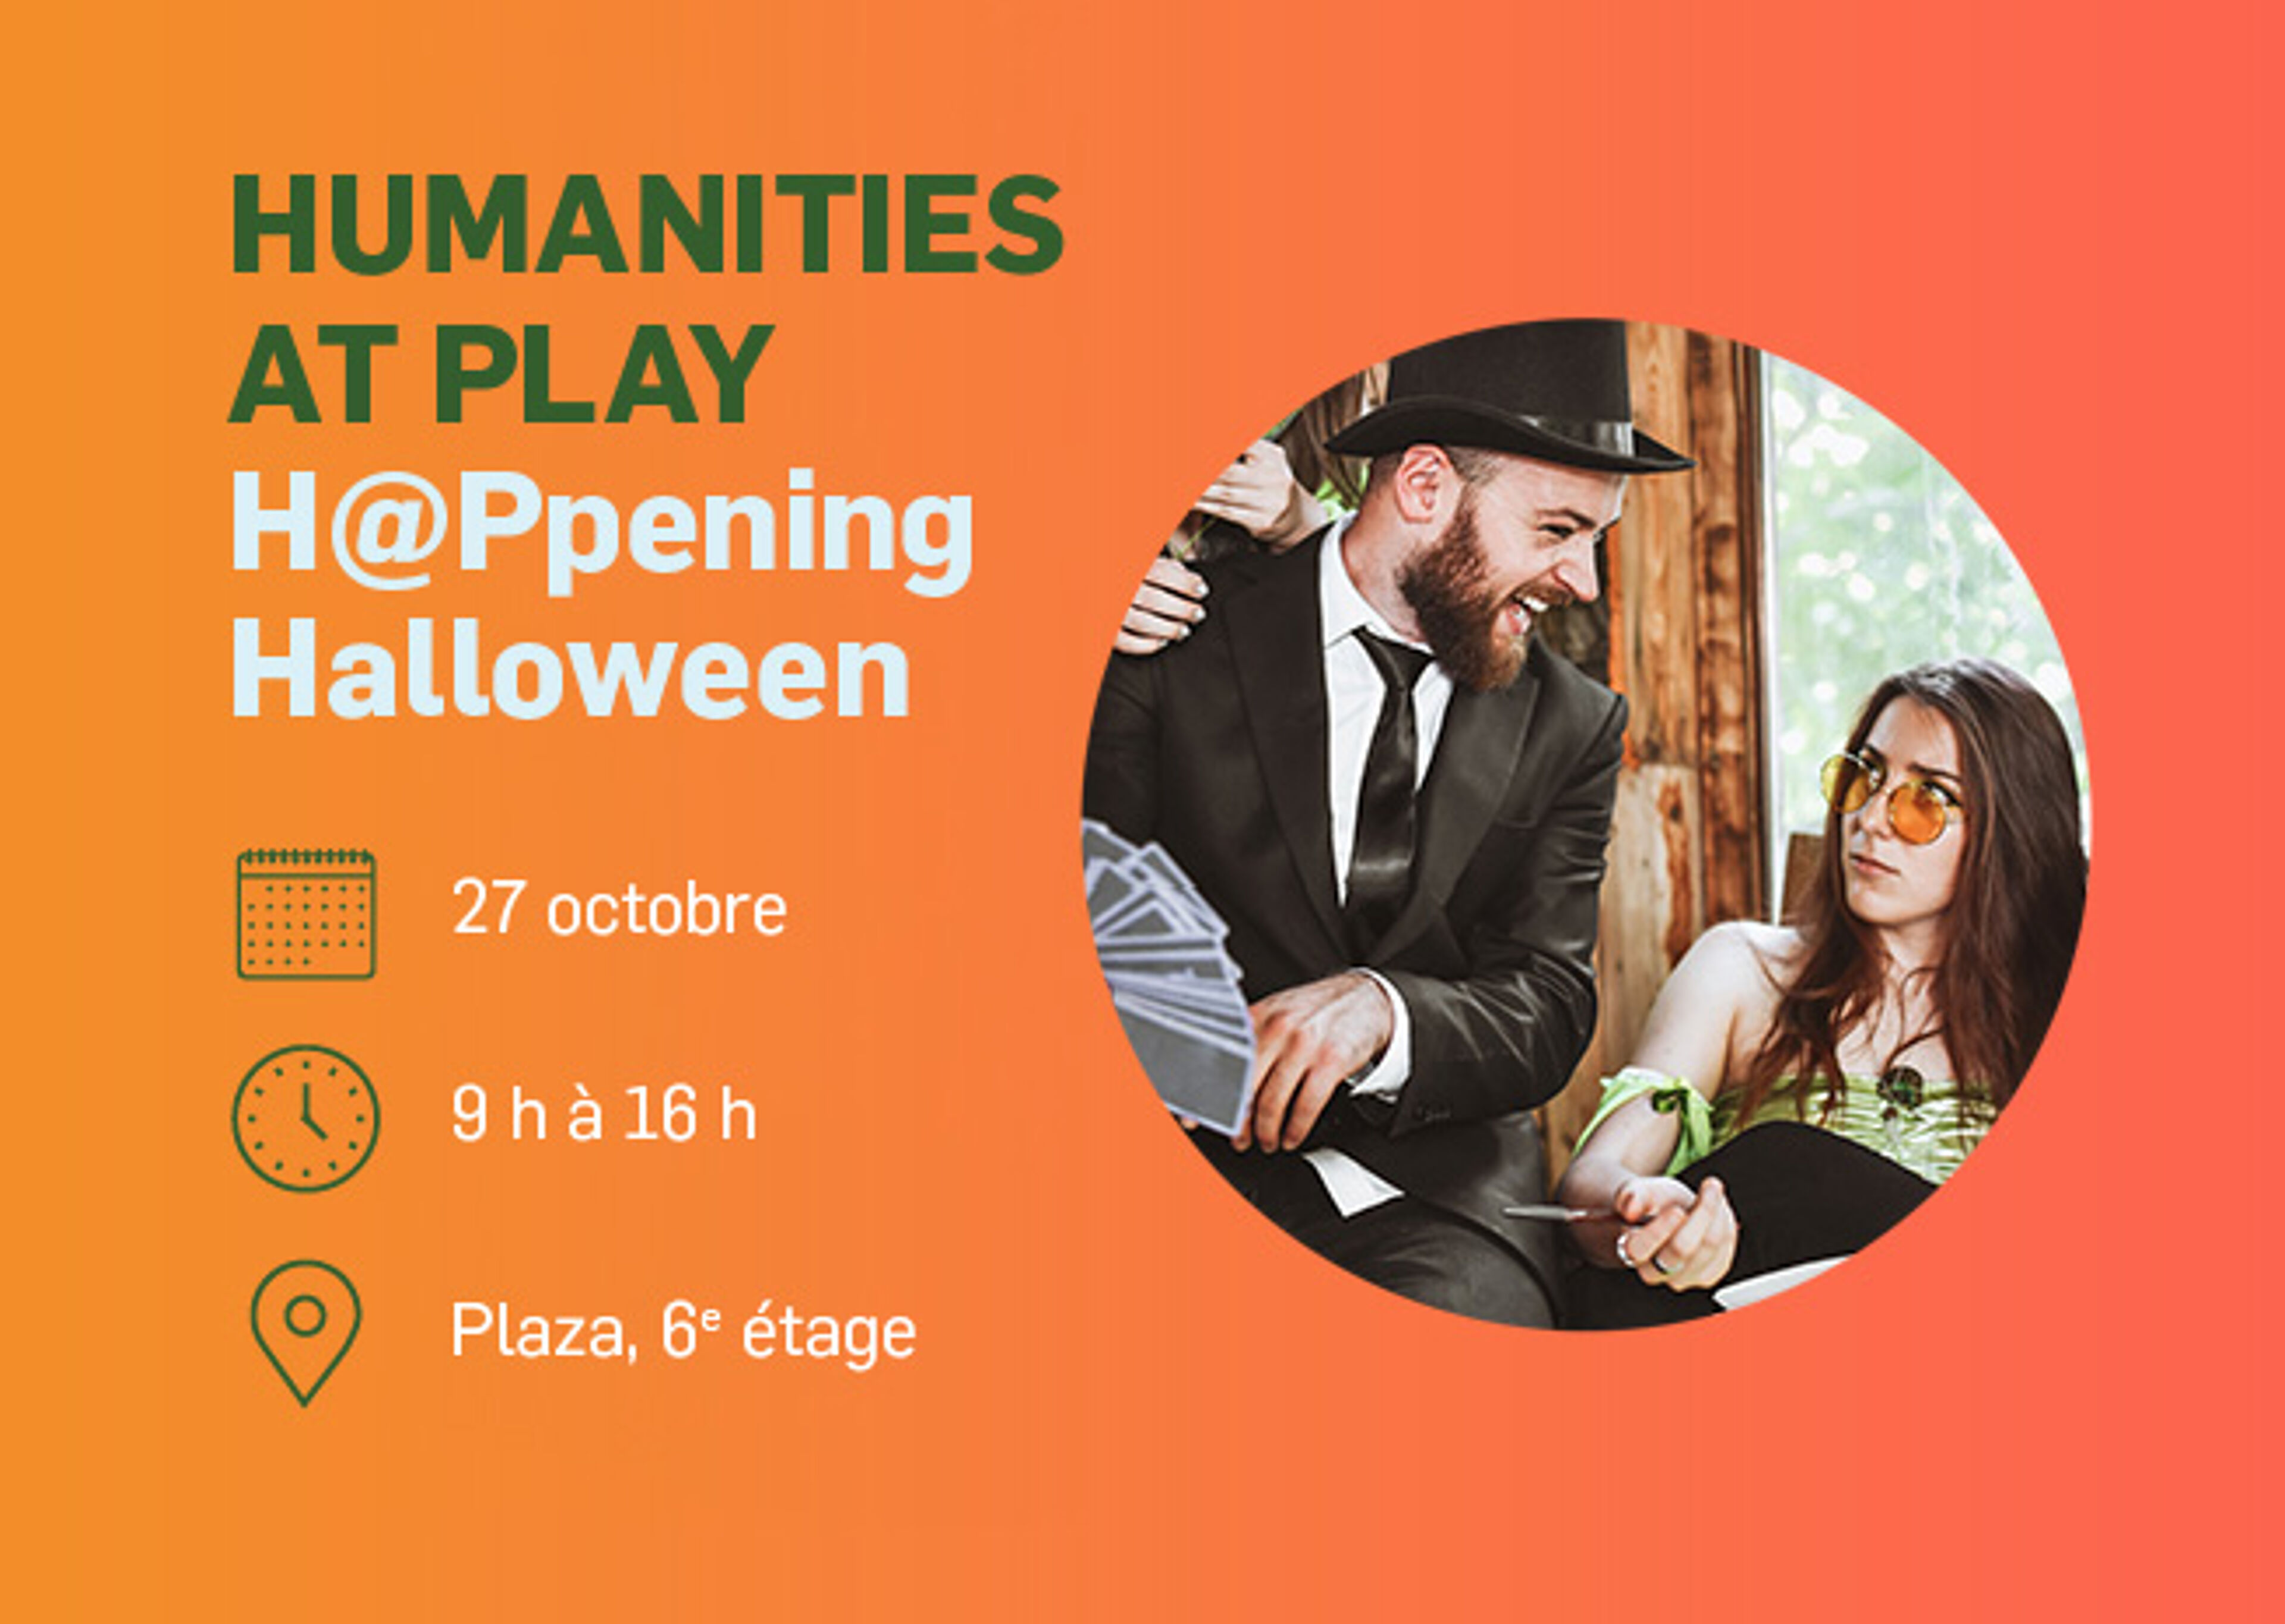 Annonce pour un événement sur le thème d'Halloween organisé par le département des Humanités le 27 octobre, de 9 h à 16 h.